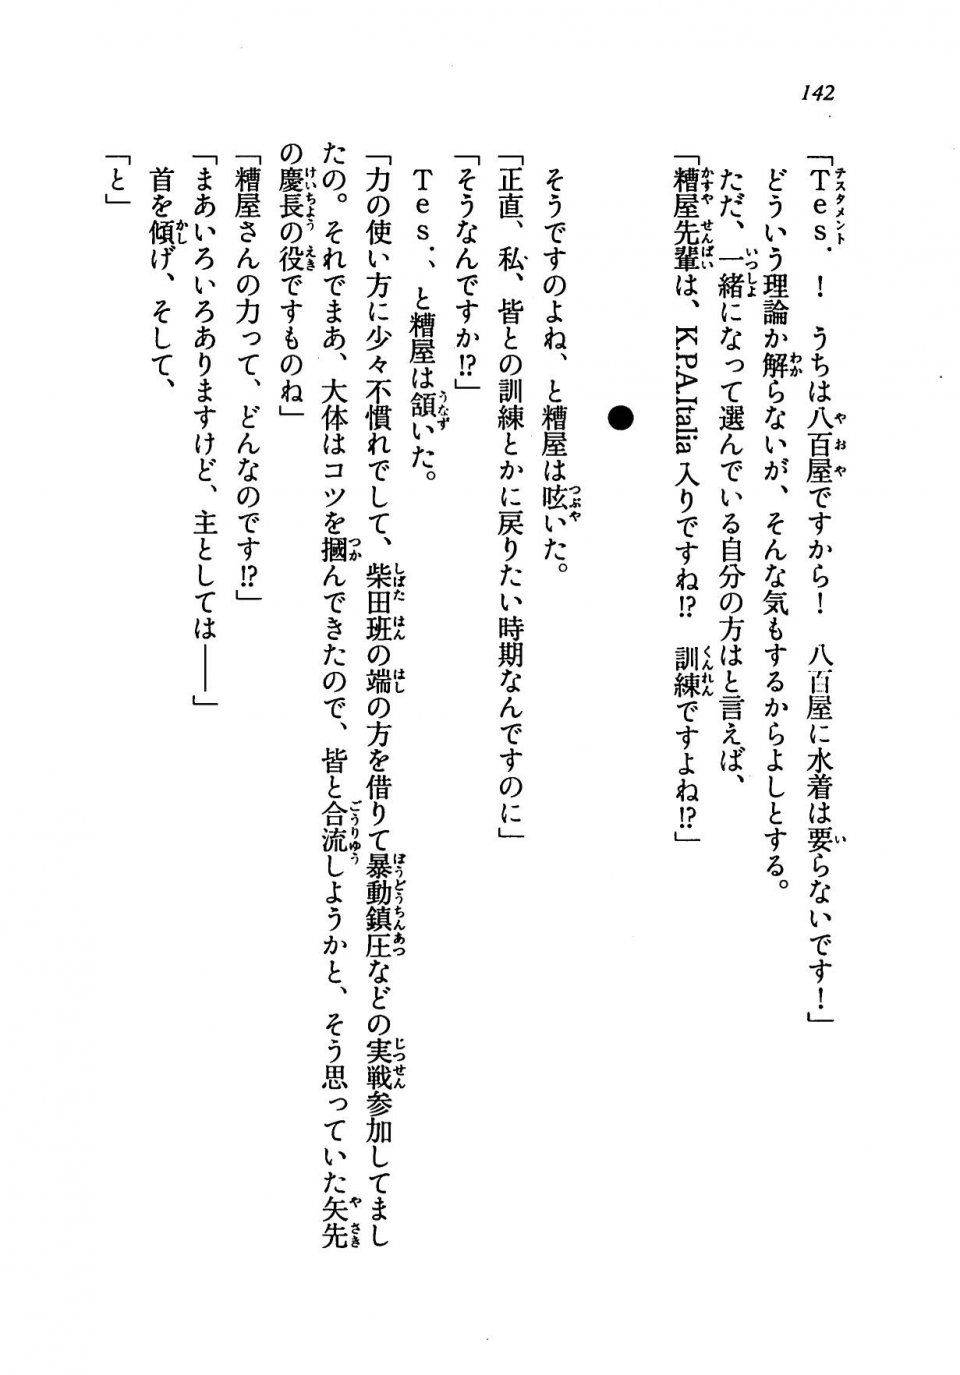 Kyoukai Senjou no Horizon LN Vol 19(8A) - Photo #142